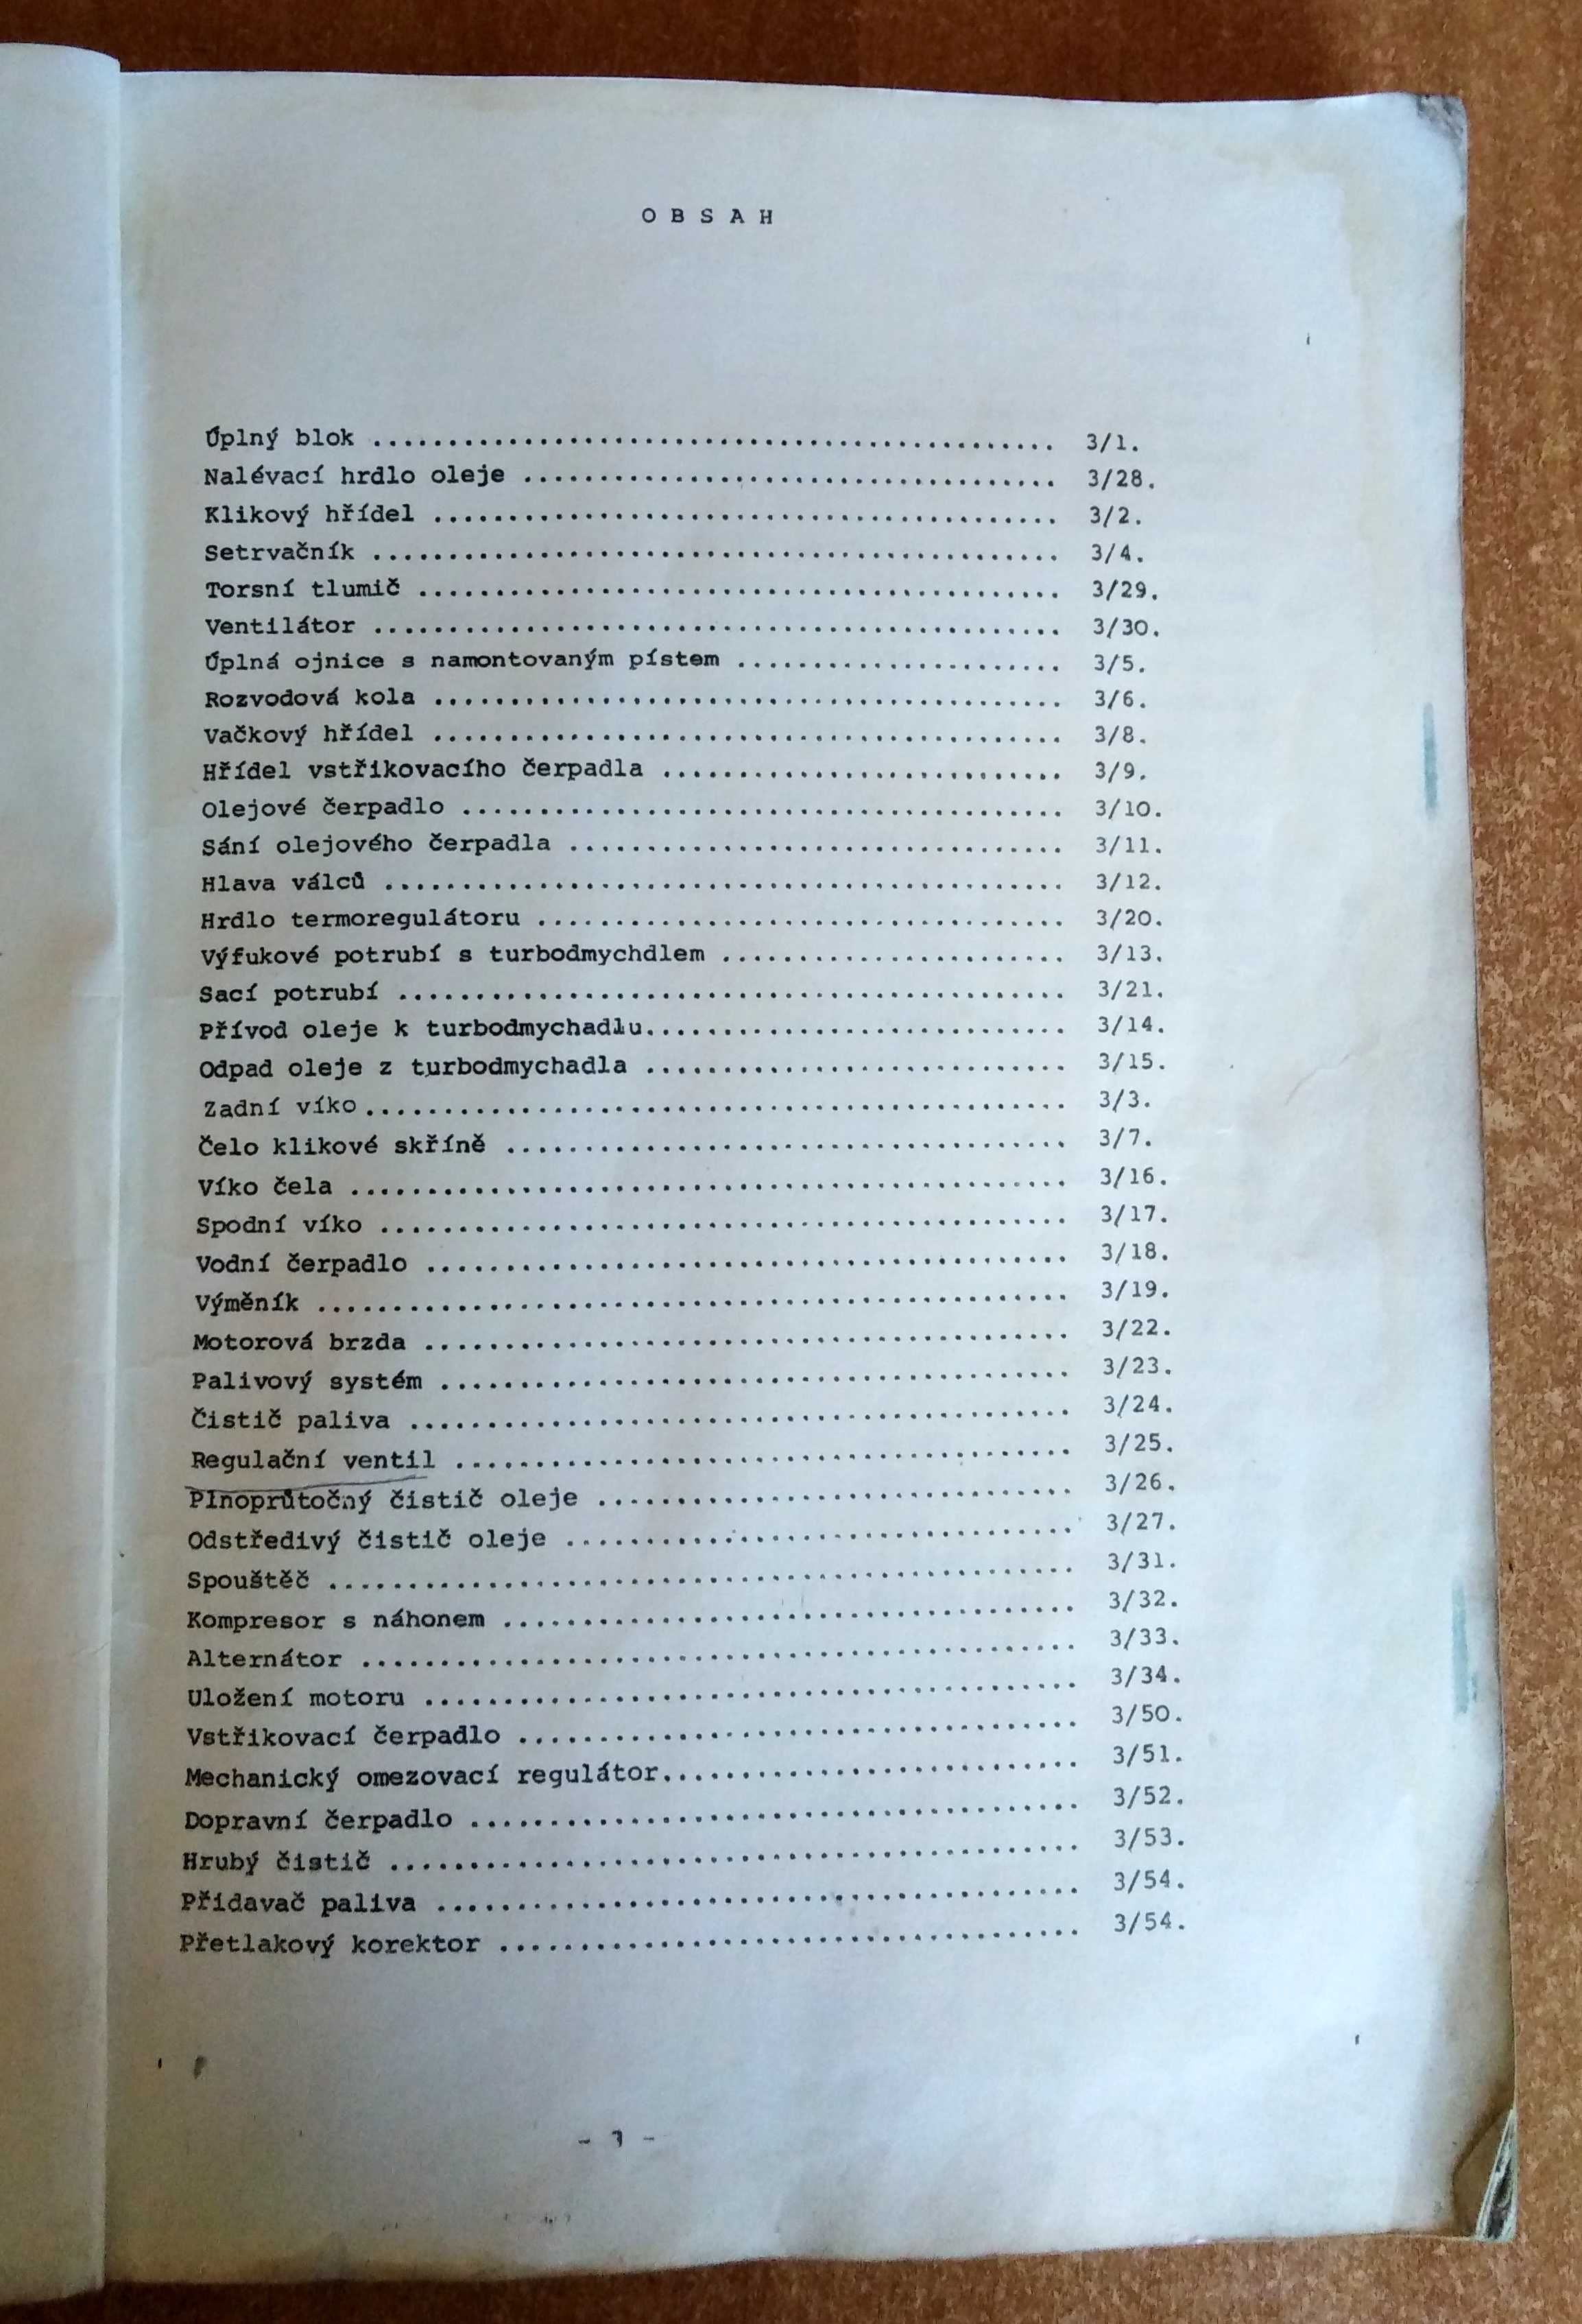 Katalog części zamiennych LIAZ 110.073 – rok 1986.